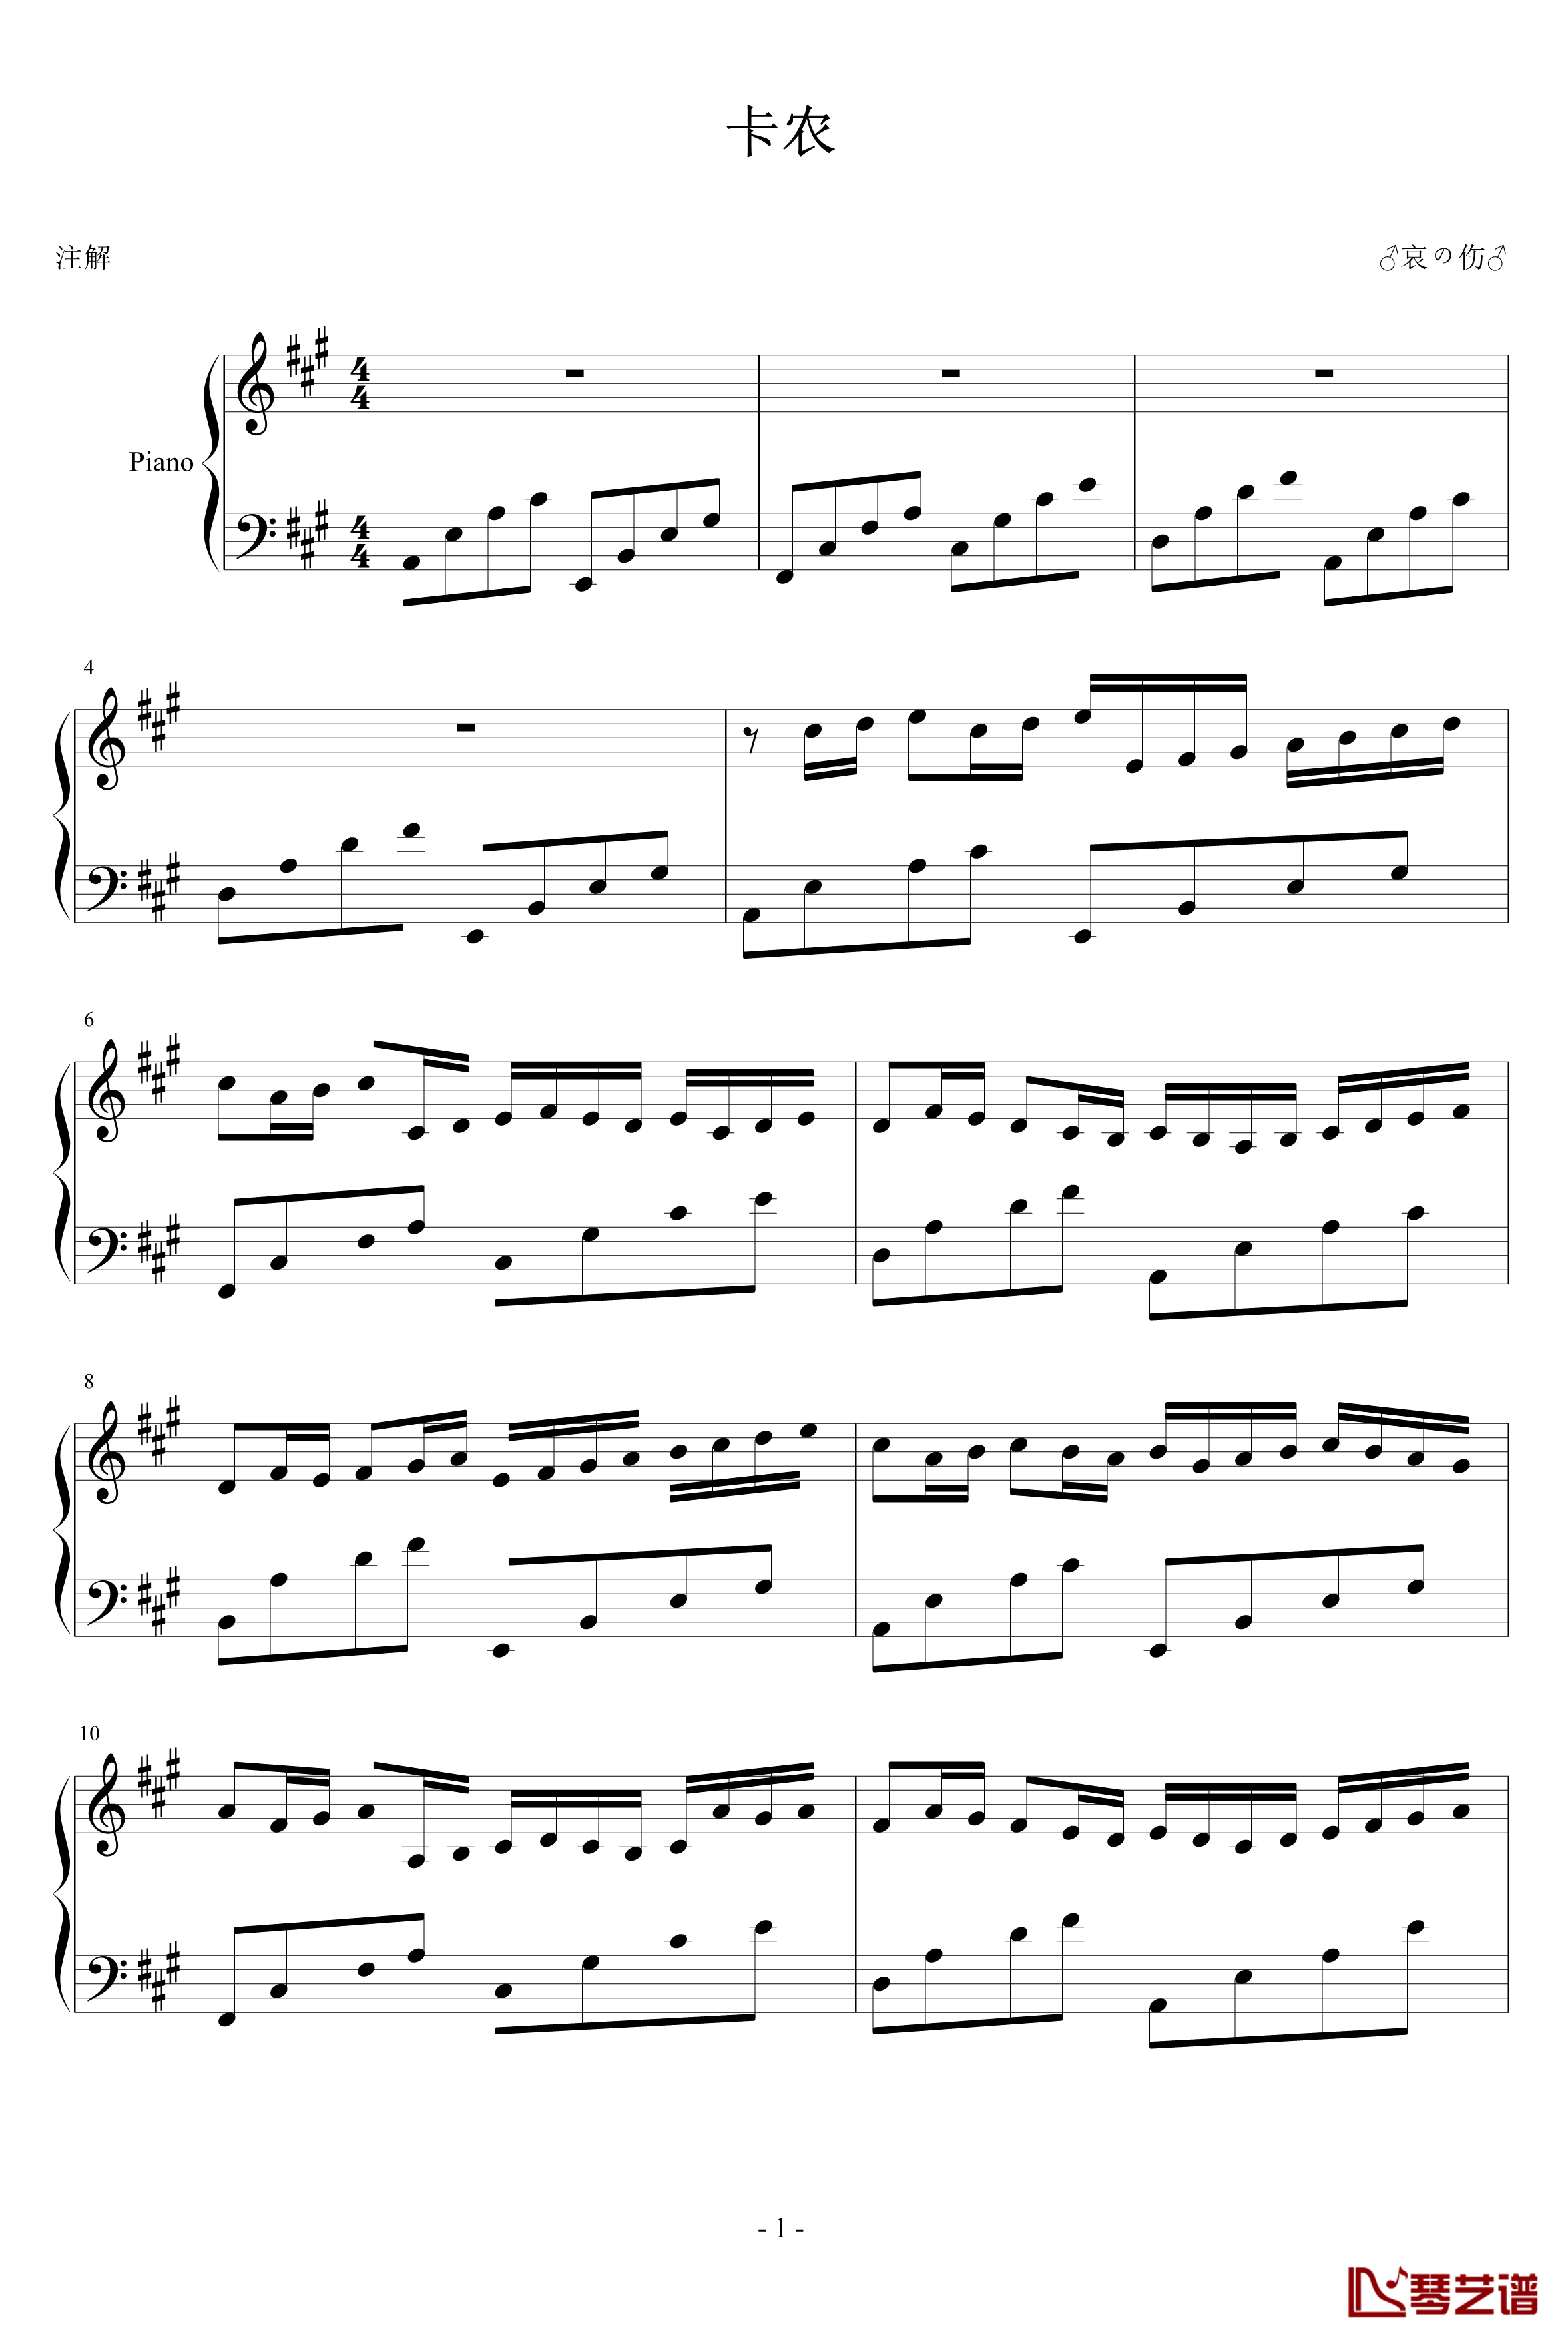 卡农变奏曲钢琴谱-帕赫贝尔-Pachelbel1